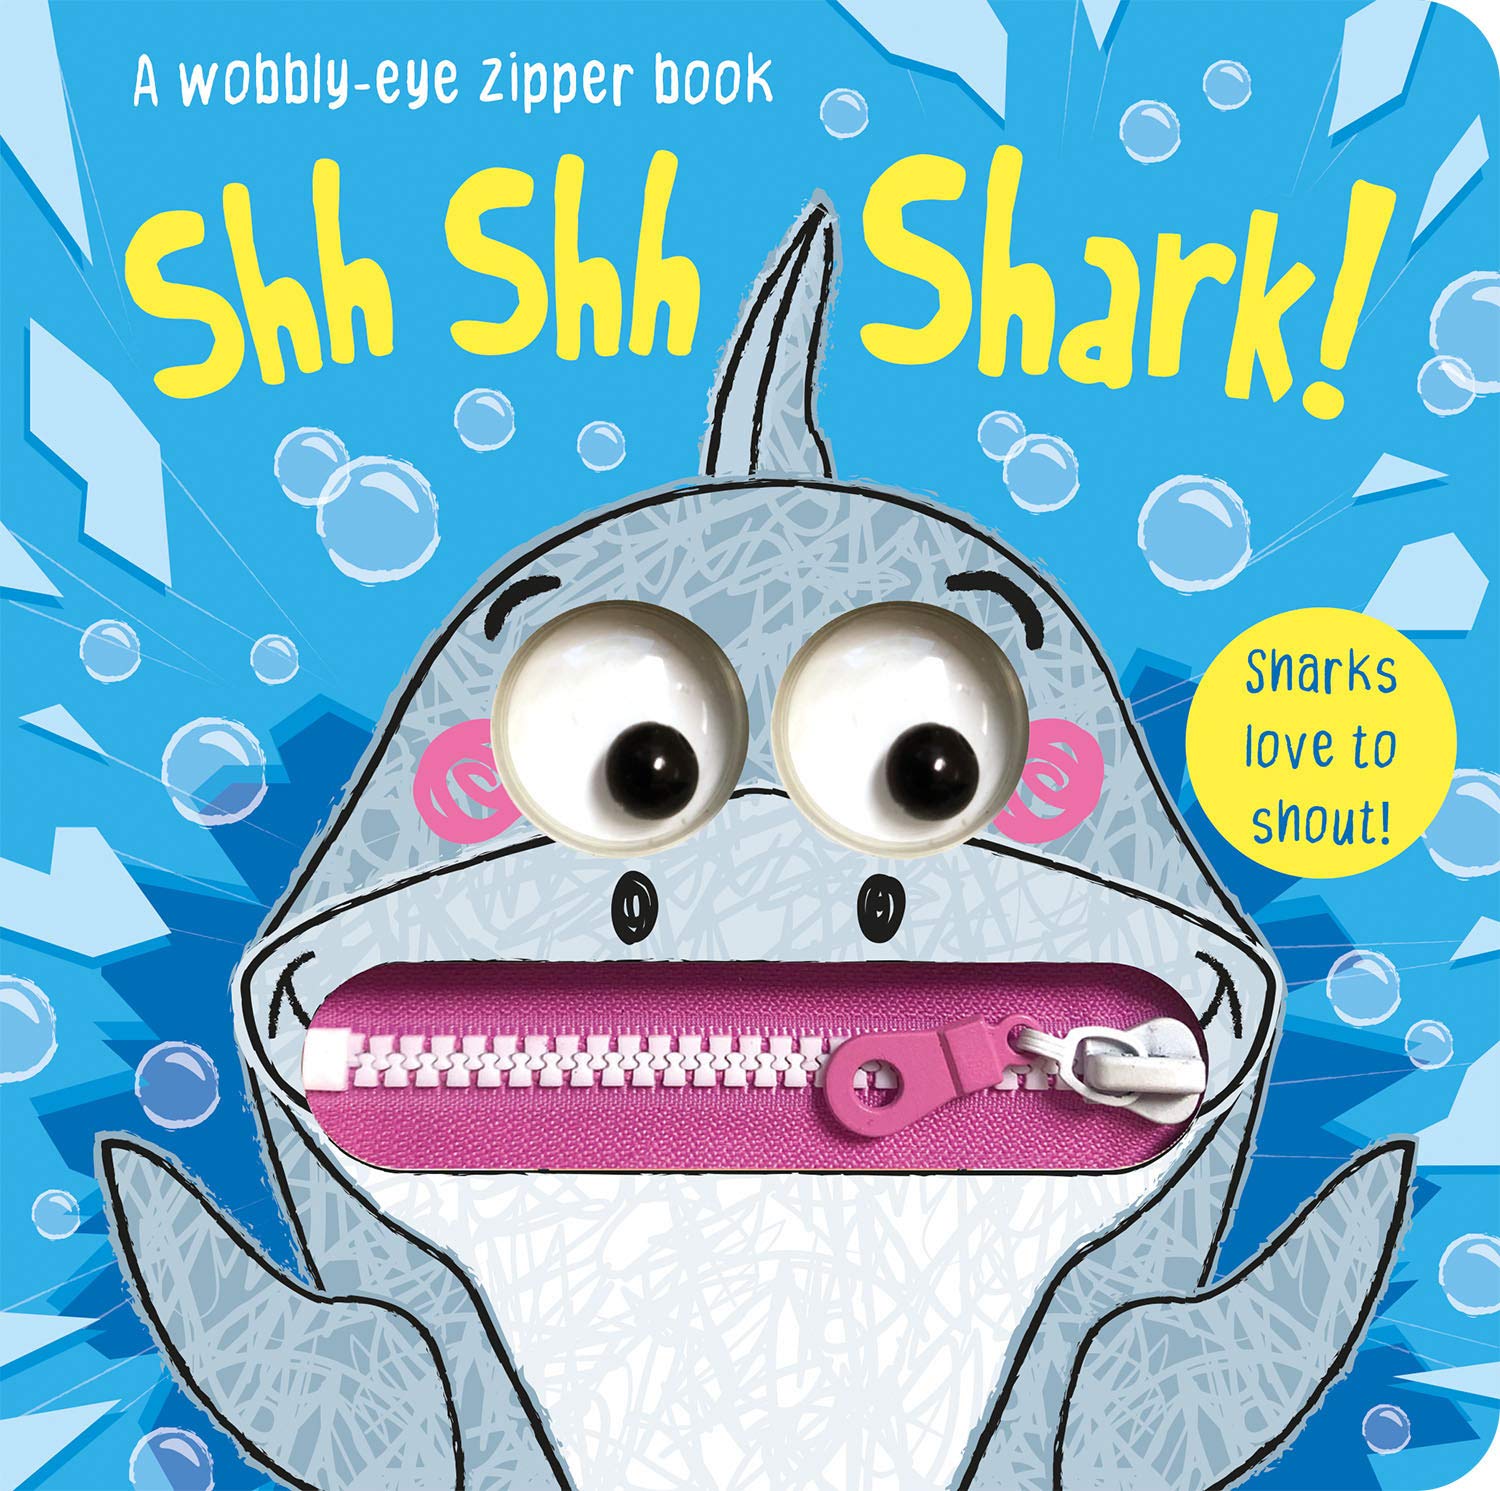 Shh Shh Shark